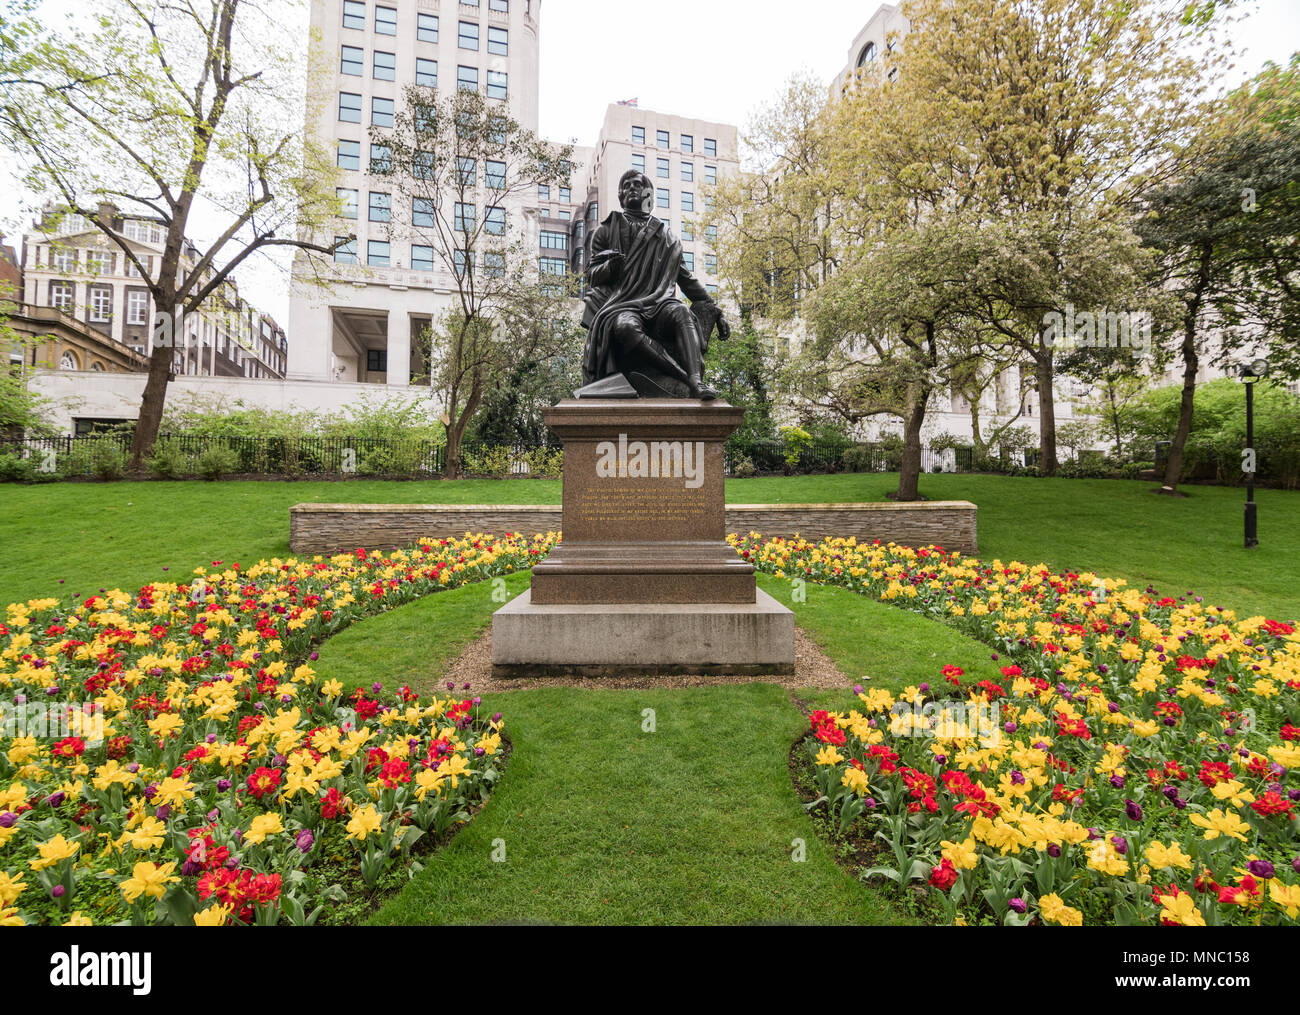 Statue du poète Robert Burns entourée de fleurs à Embankment Gardens, Londres. Banque D'Images